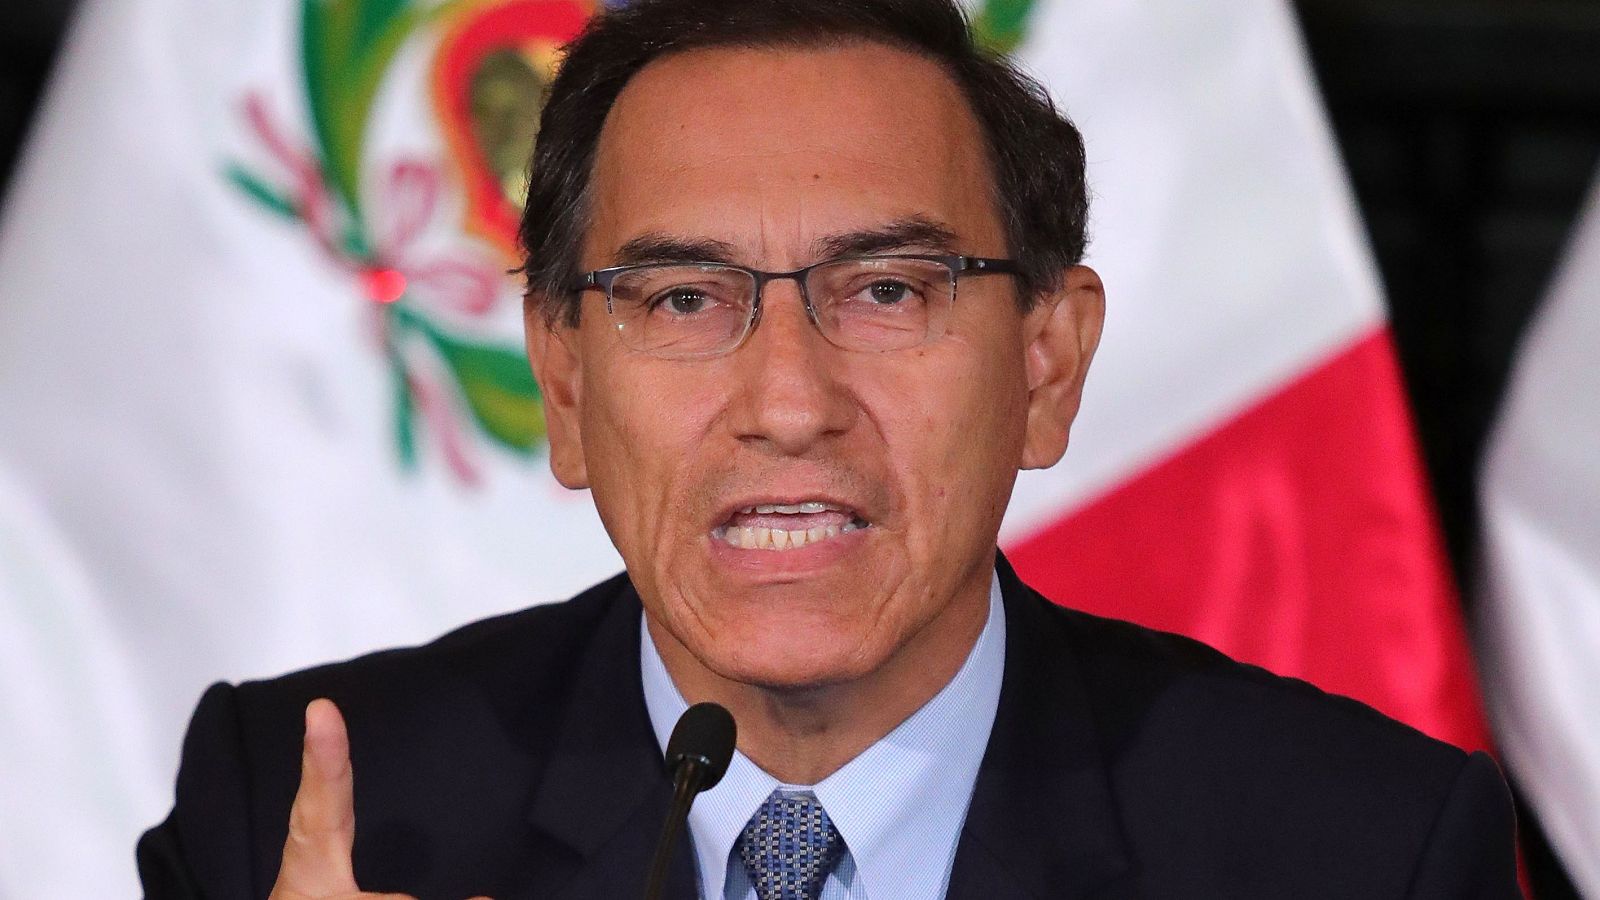 El expresidente de Perú Martín Vizcarra en una imagen de archivo tomada en 2018